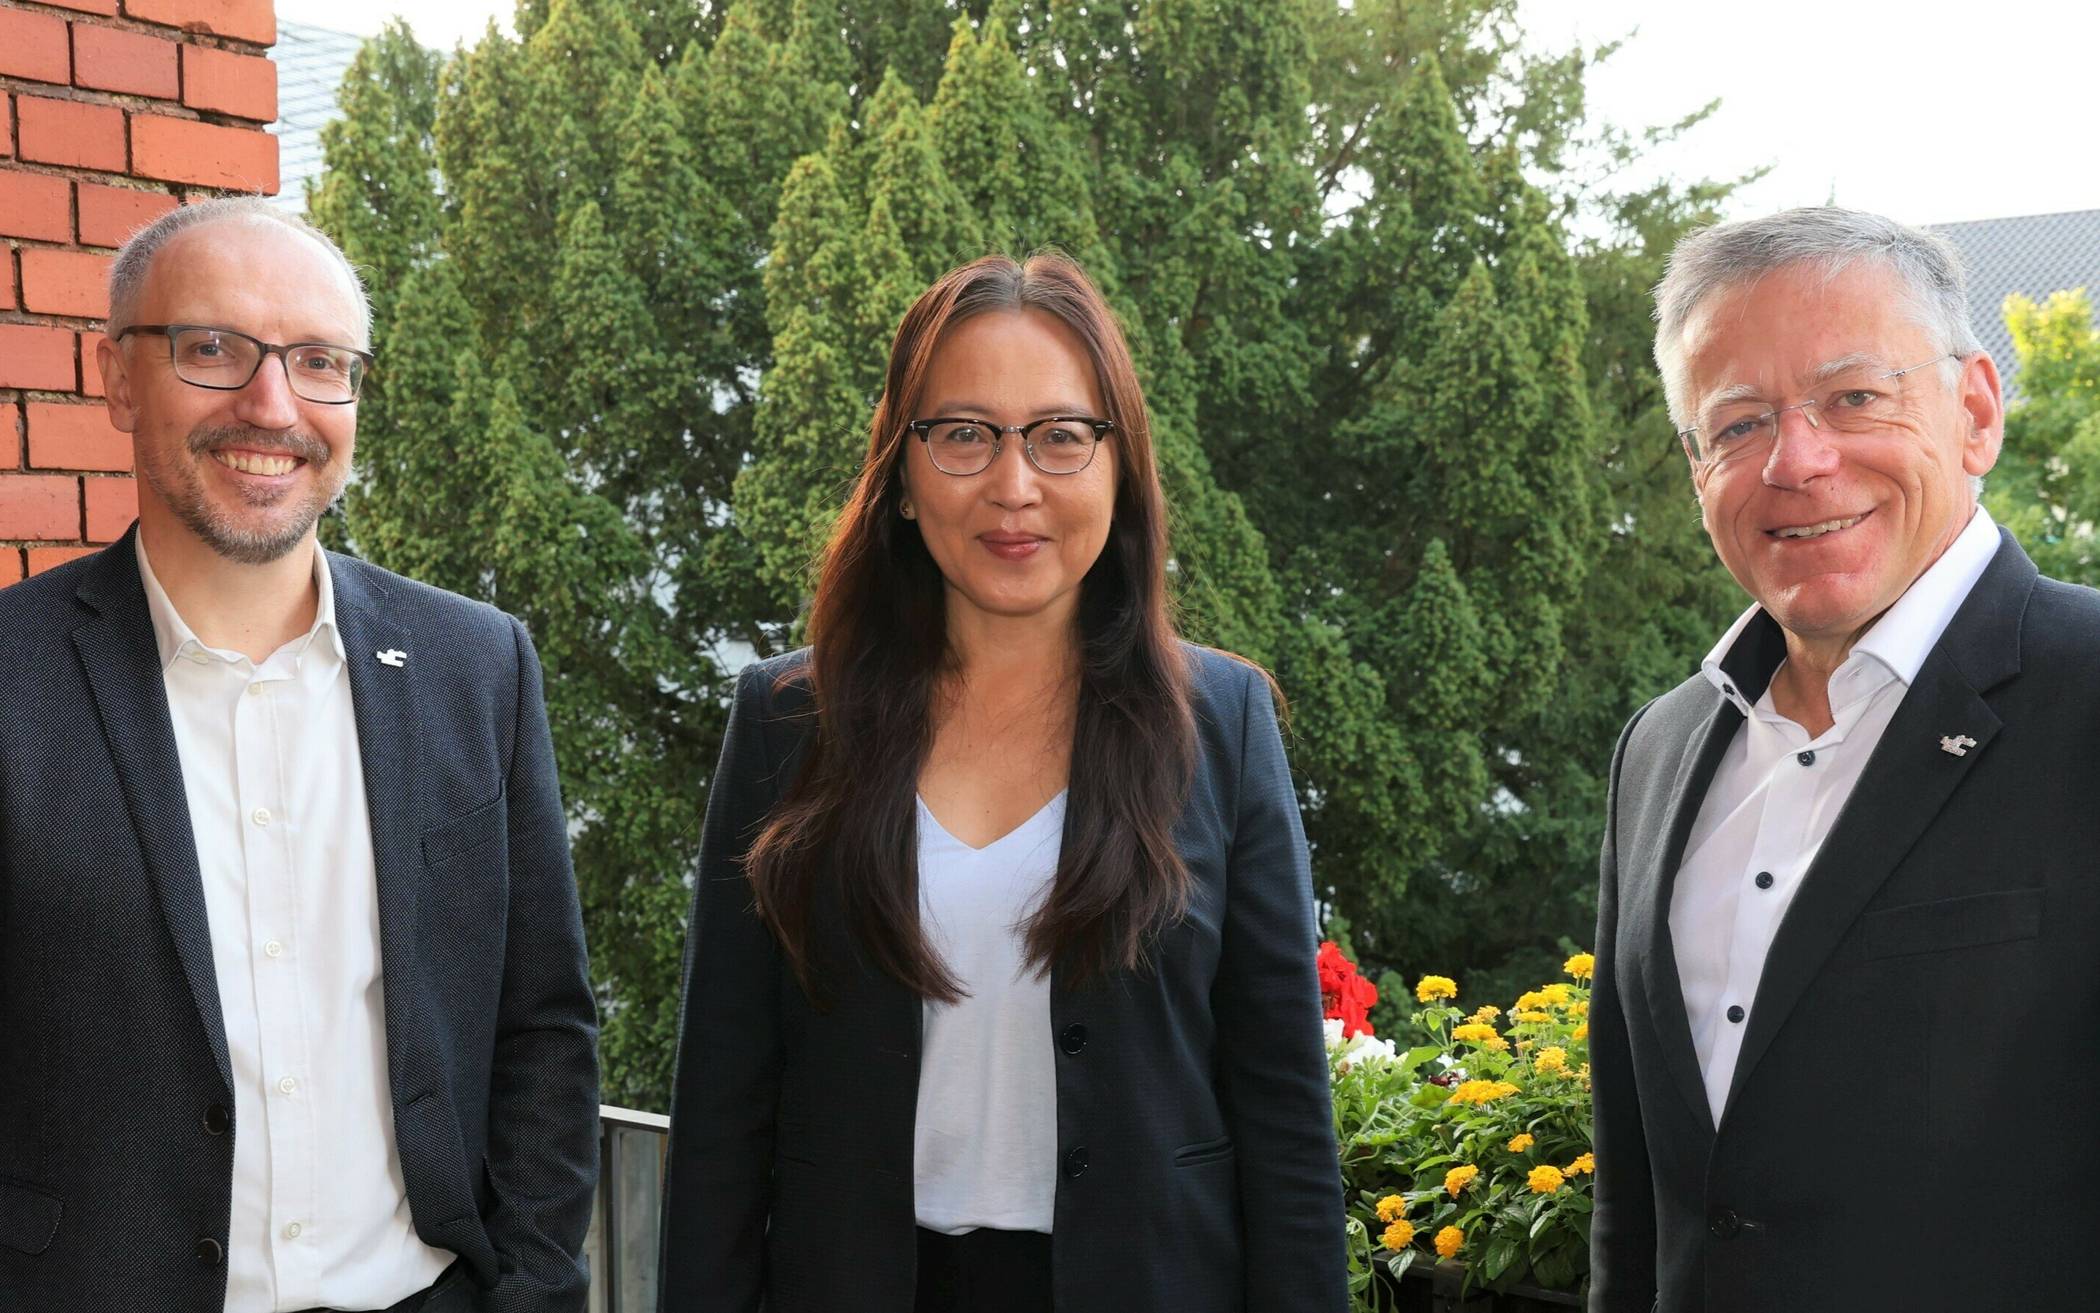  Neue Koordinatorin des flächendeckenden Ausbaus von Mobilfunknetzen im Rhein-Kreis  (von links): Marcus Temburg, Dr. Anna Beck und Landrat Hans-Jürgen Petrauschke. 